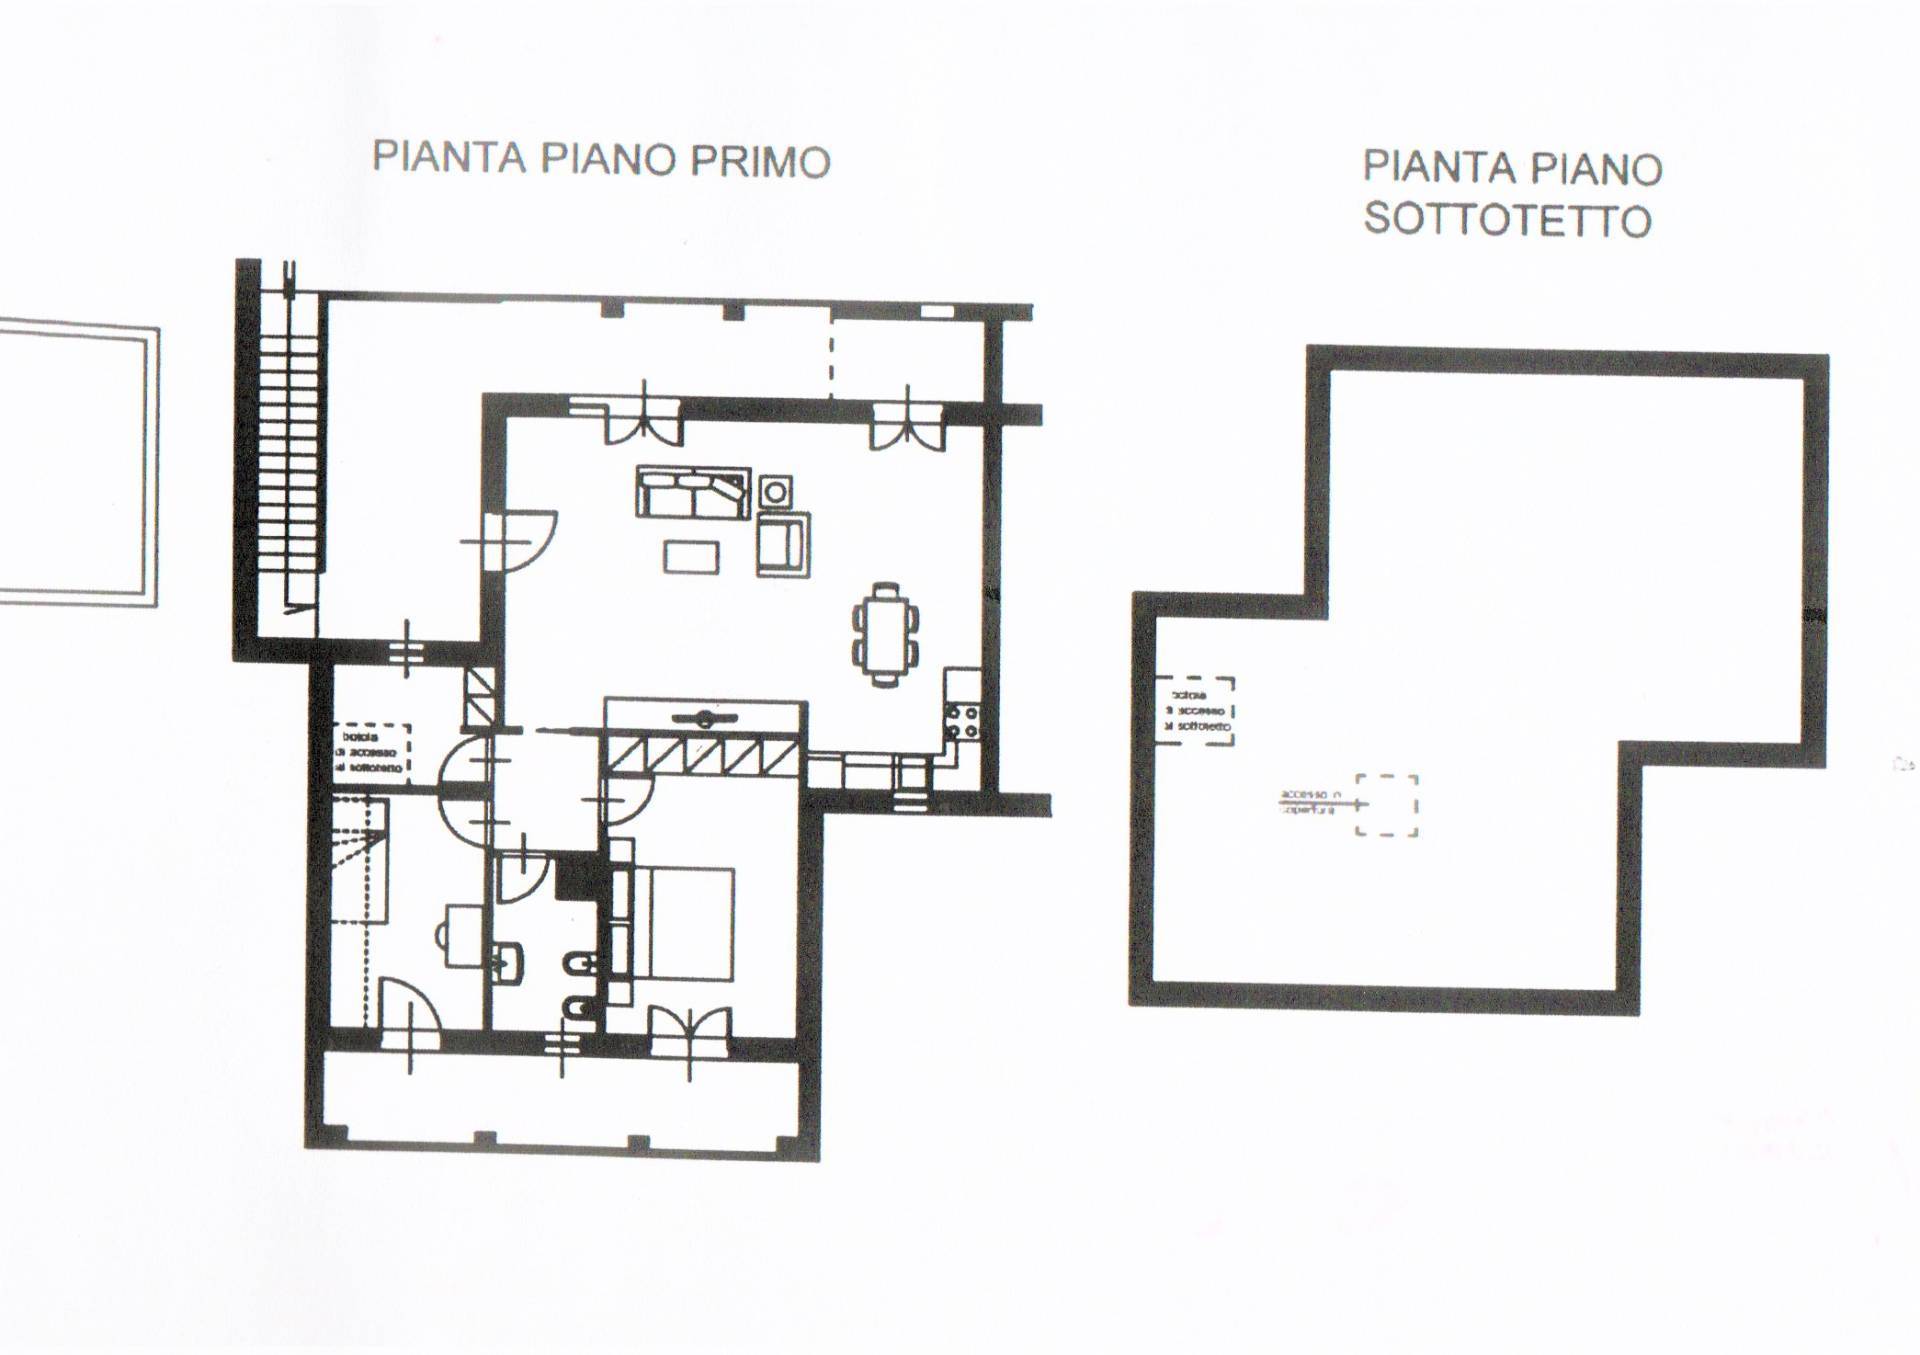 Appartamento in vendita a Casciana Terme Lari, 4 locali, prezzo € 163.000 | PortaleAgenzieImmobiliari.it